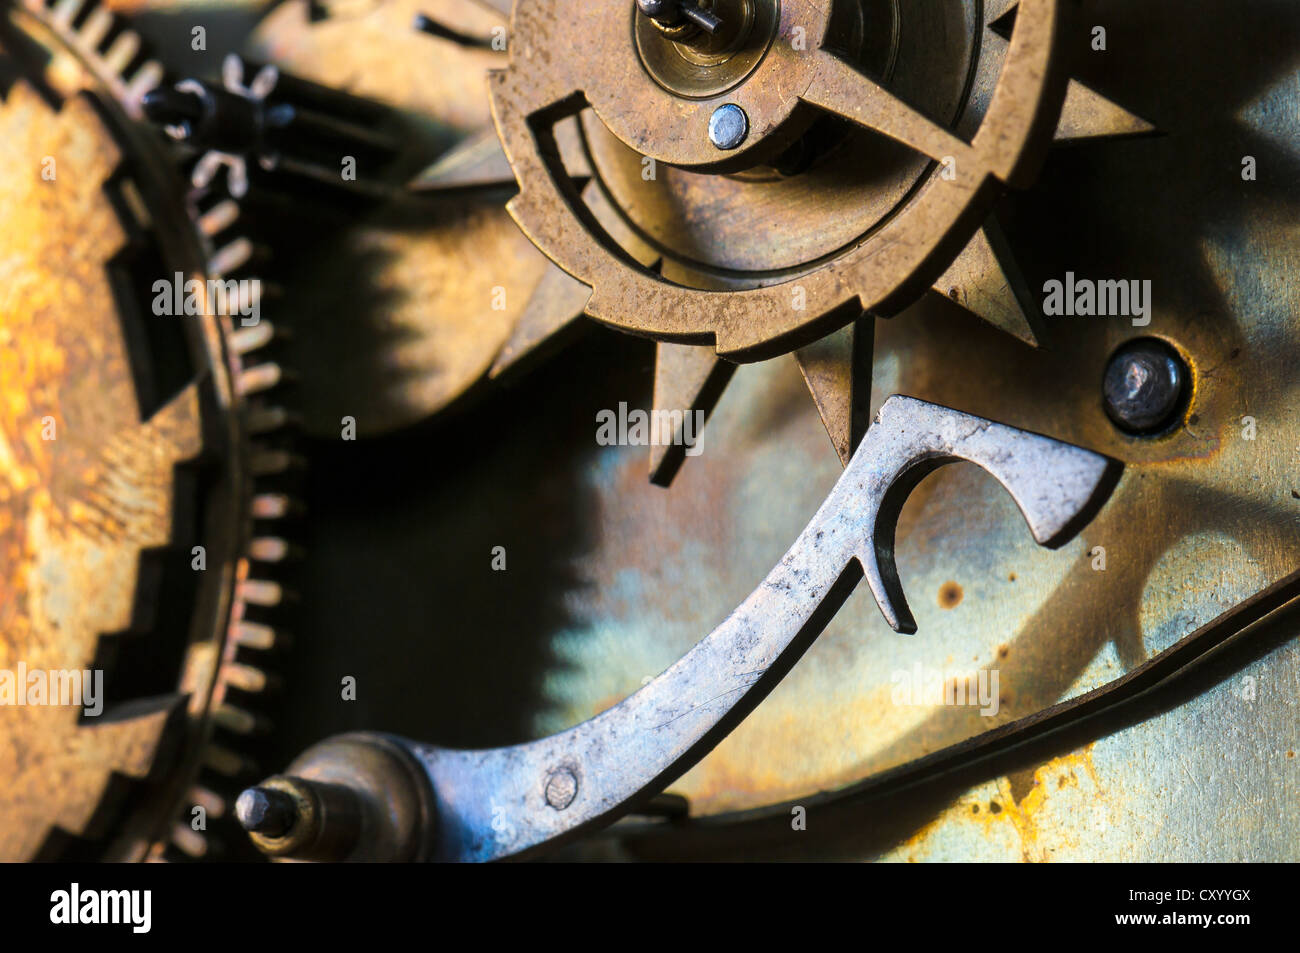 Les pignons et rouages de l'horloge d'une horloge à pendule historique, détail, régulateur Banque D'Images